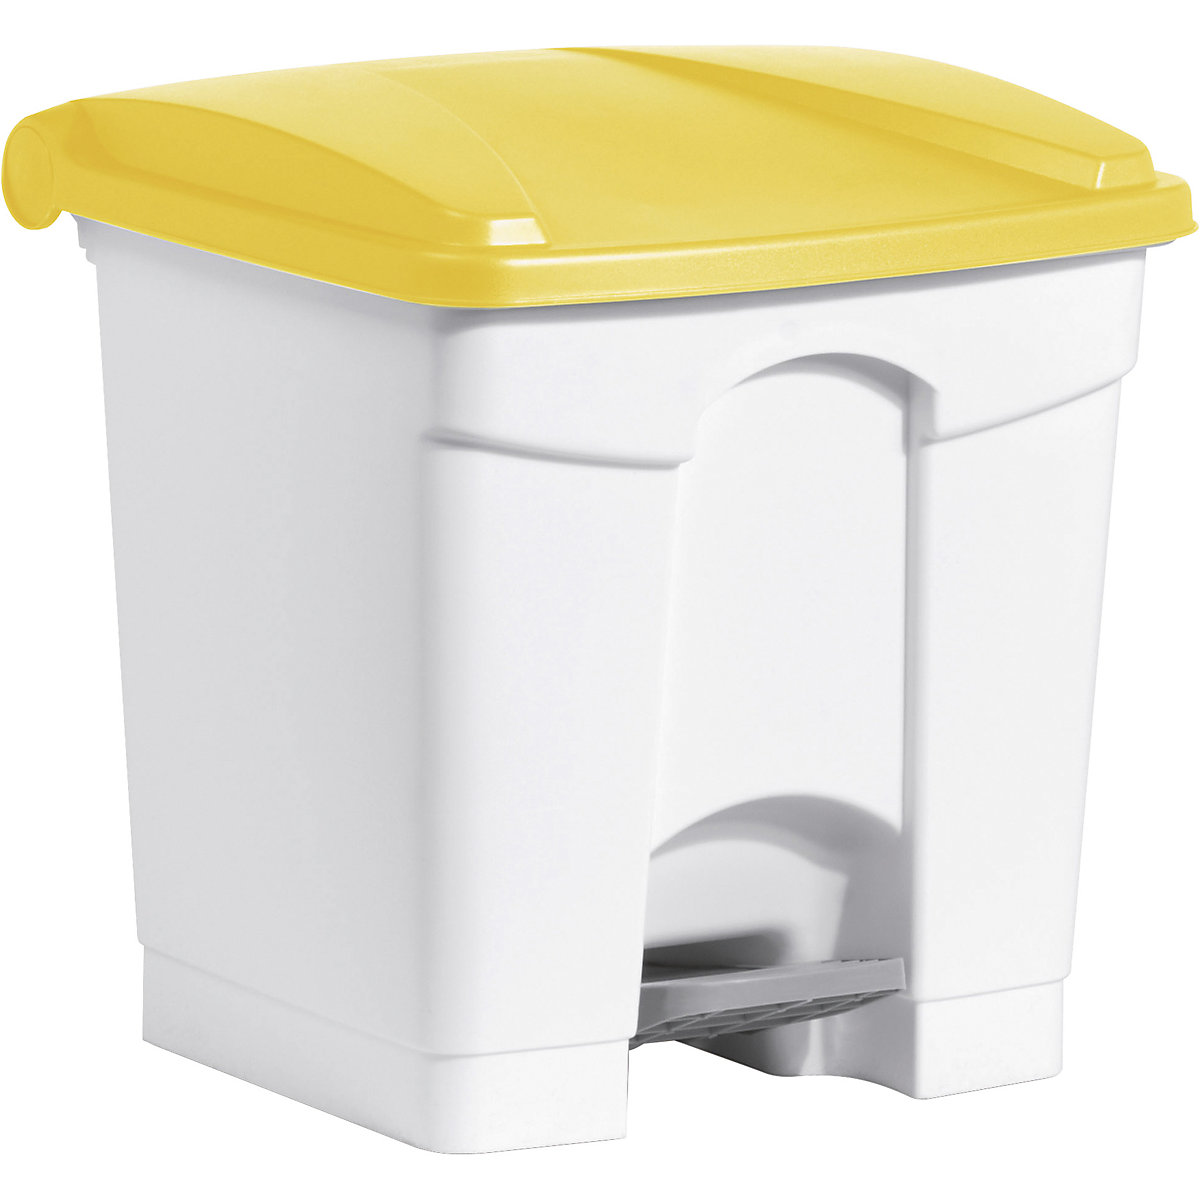 Pedal bin – helit, capacity 30 l, WxHxD 410 x 440 x 400 mm, white, yellow lid-8